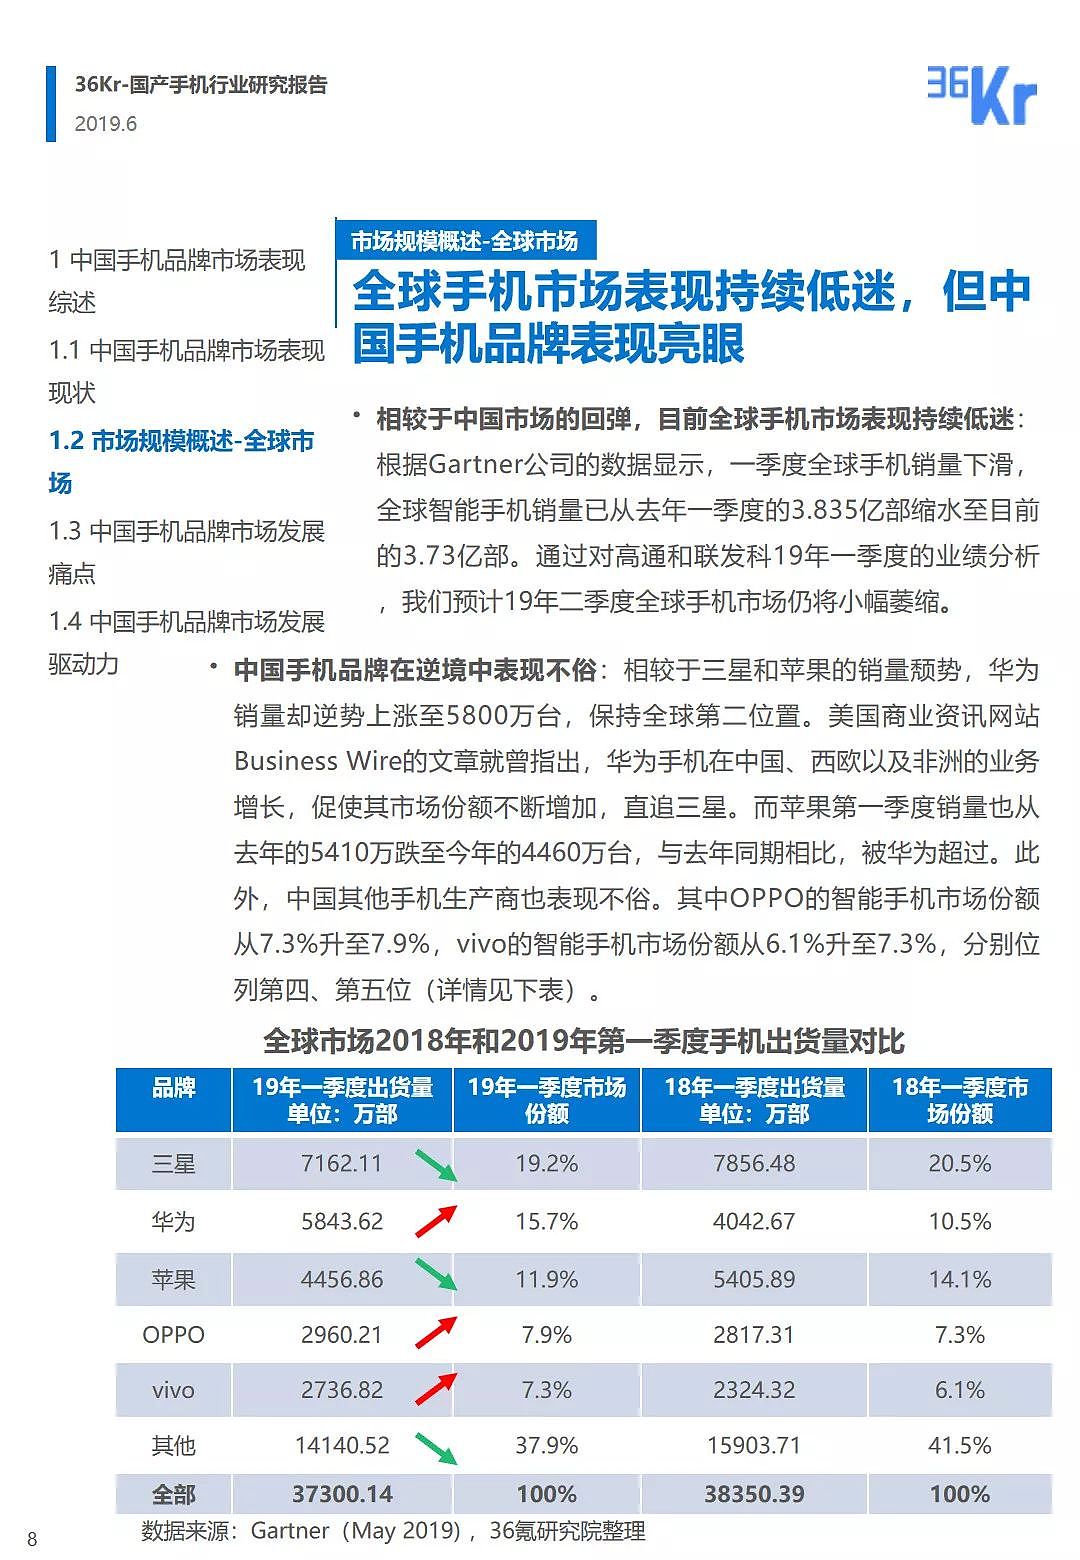 中国手机品牌市场营销研究报告 | 36氪研究 - 9